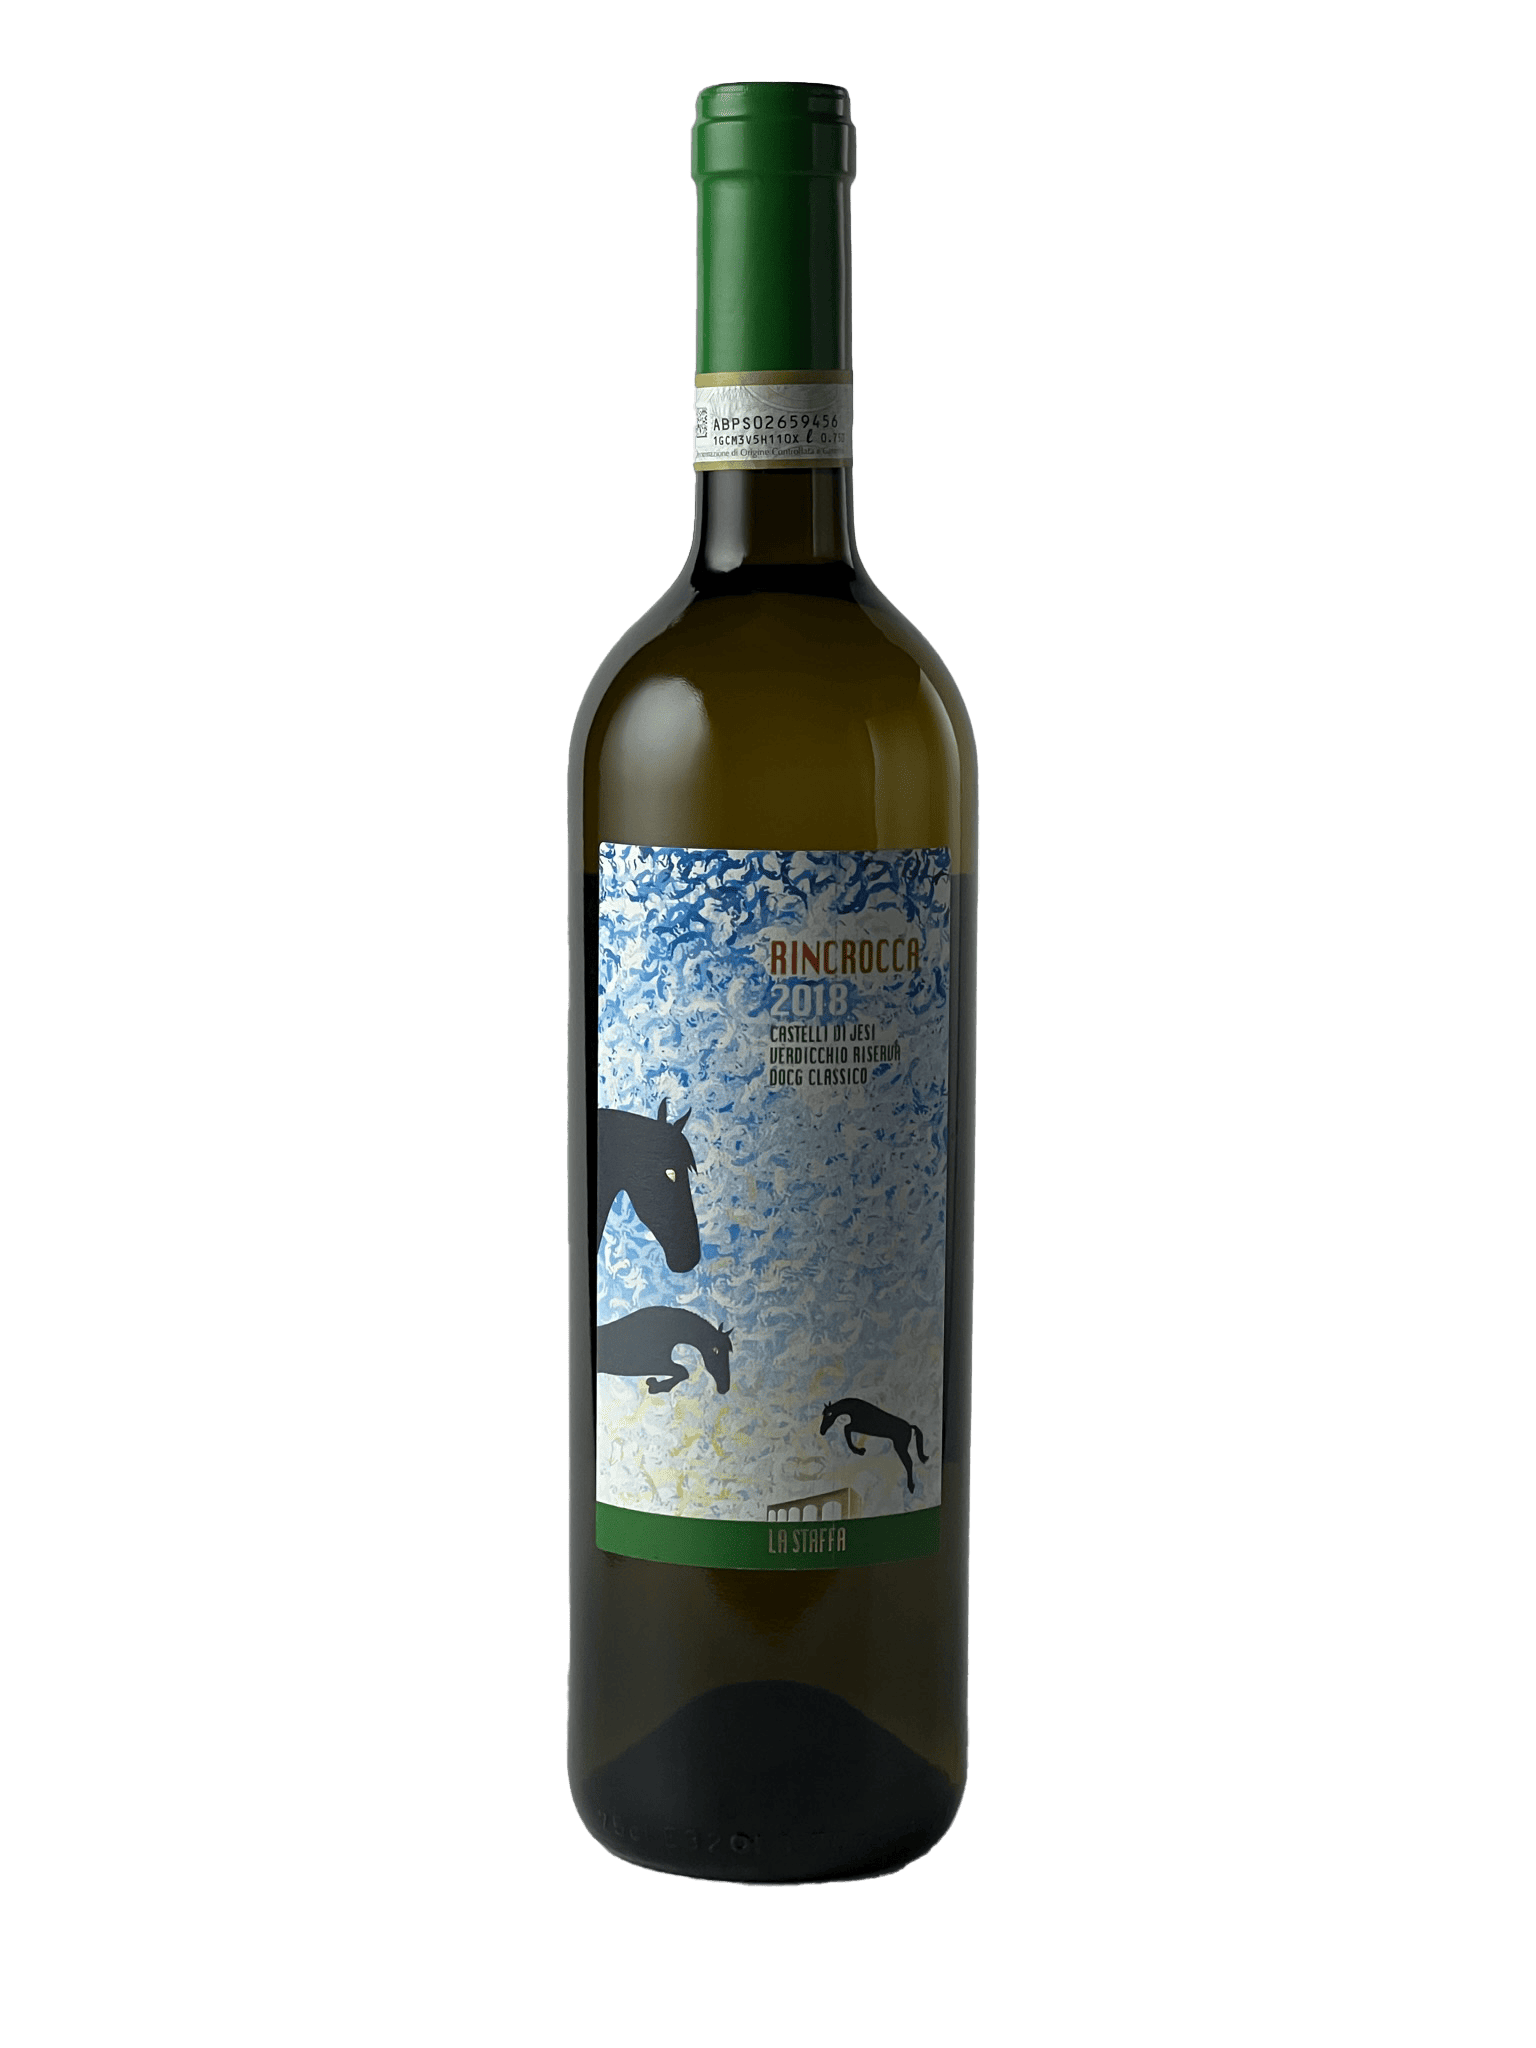 Hyde Park Fine Wines photo of La Staffa 'Rincrocca' Verdicchio Riserva (2018)